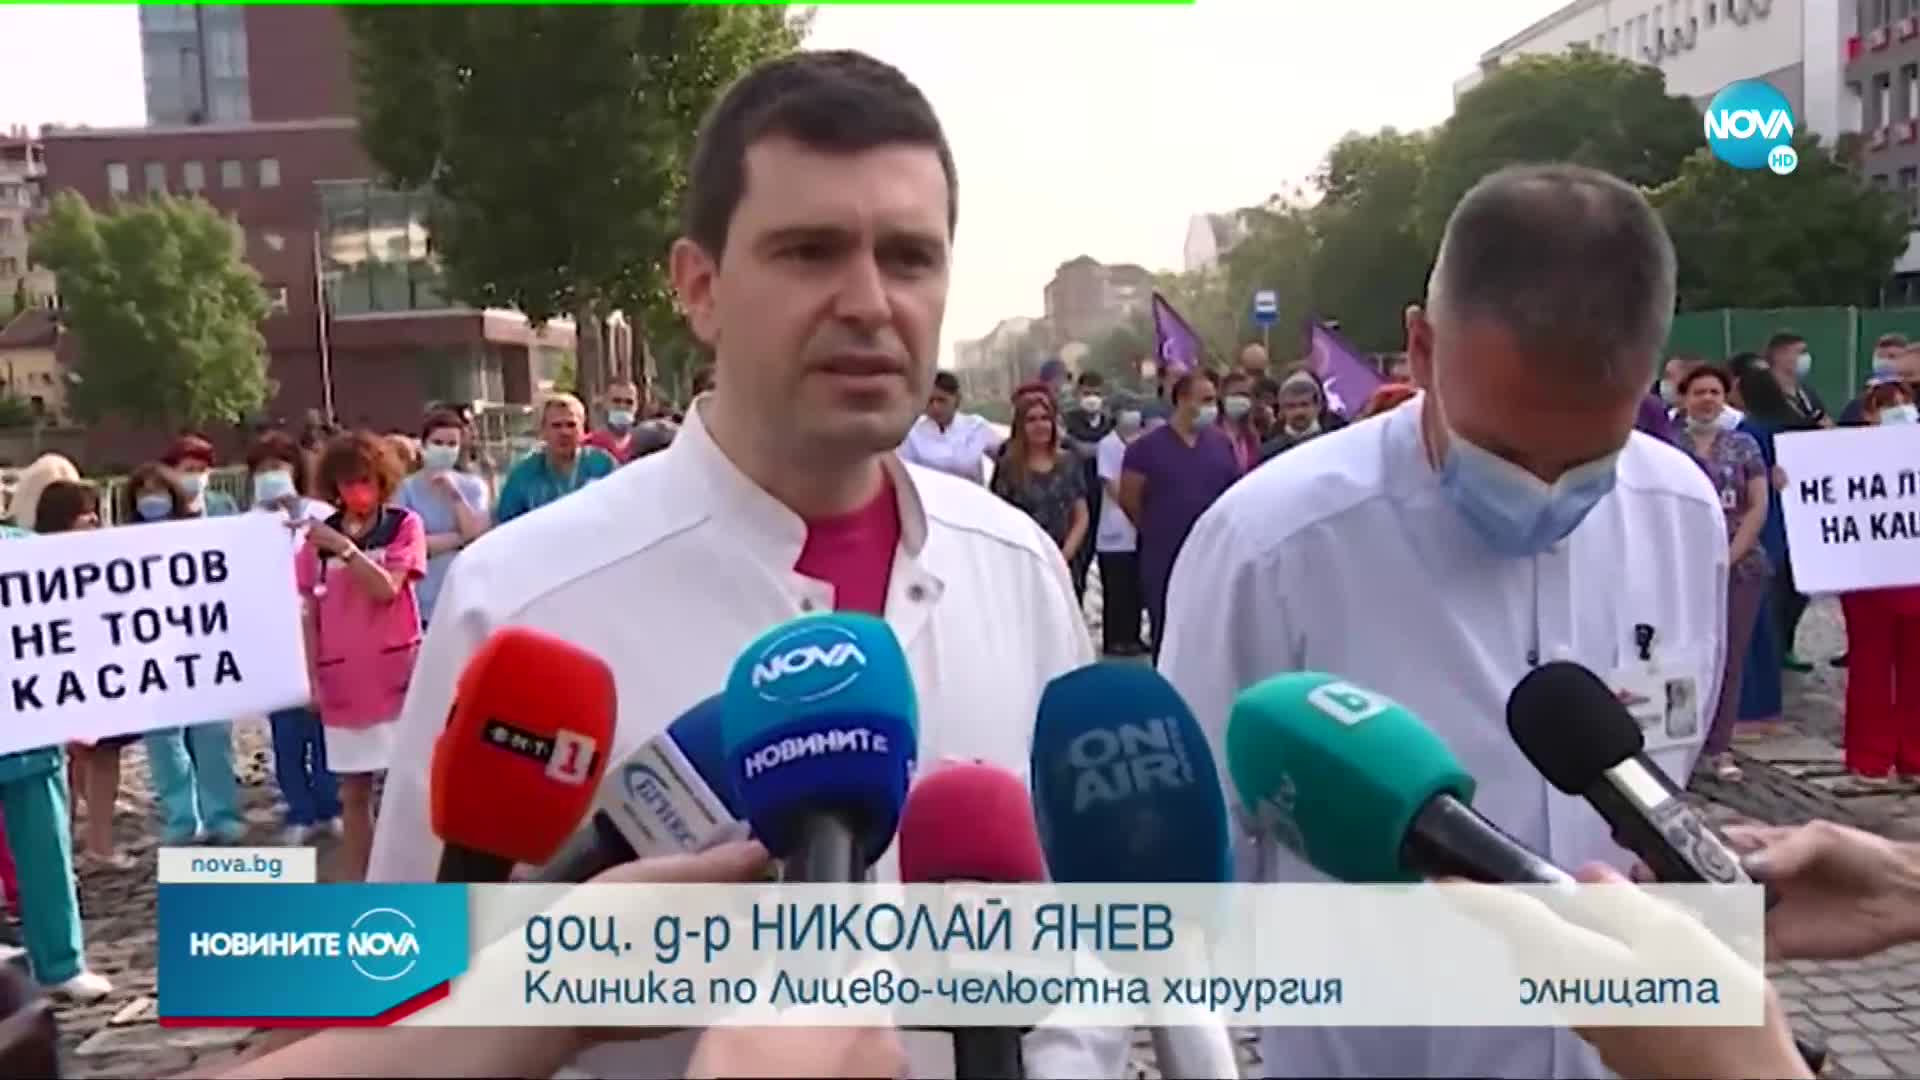 Медиците от "Пирогов" планират да преместят протеста